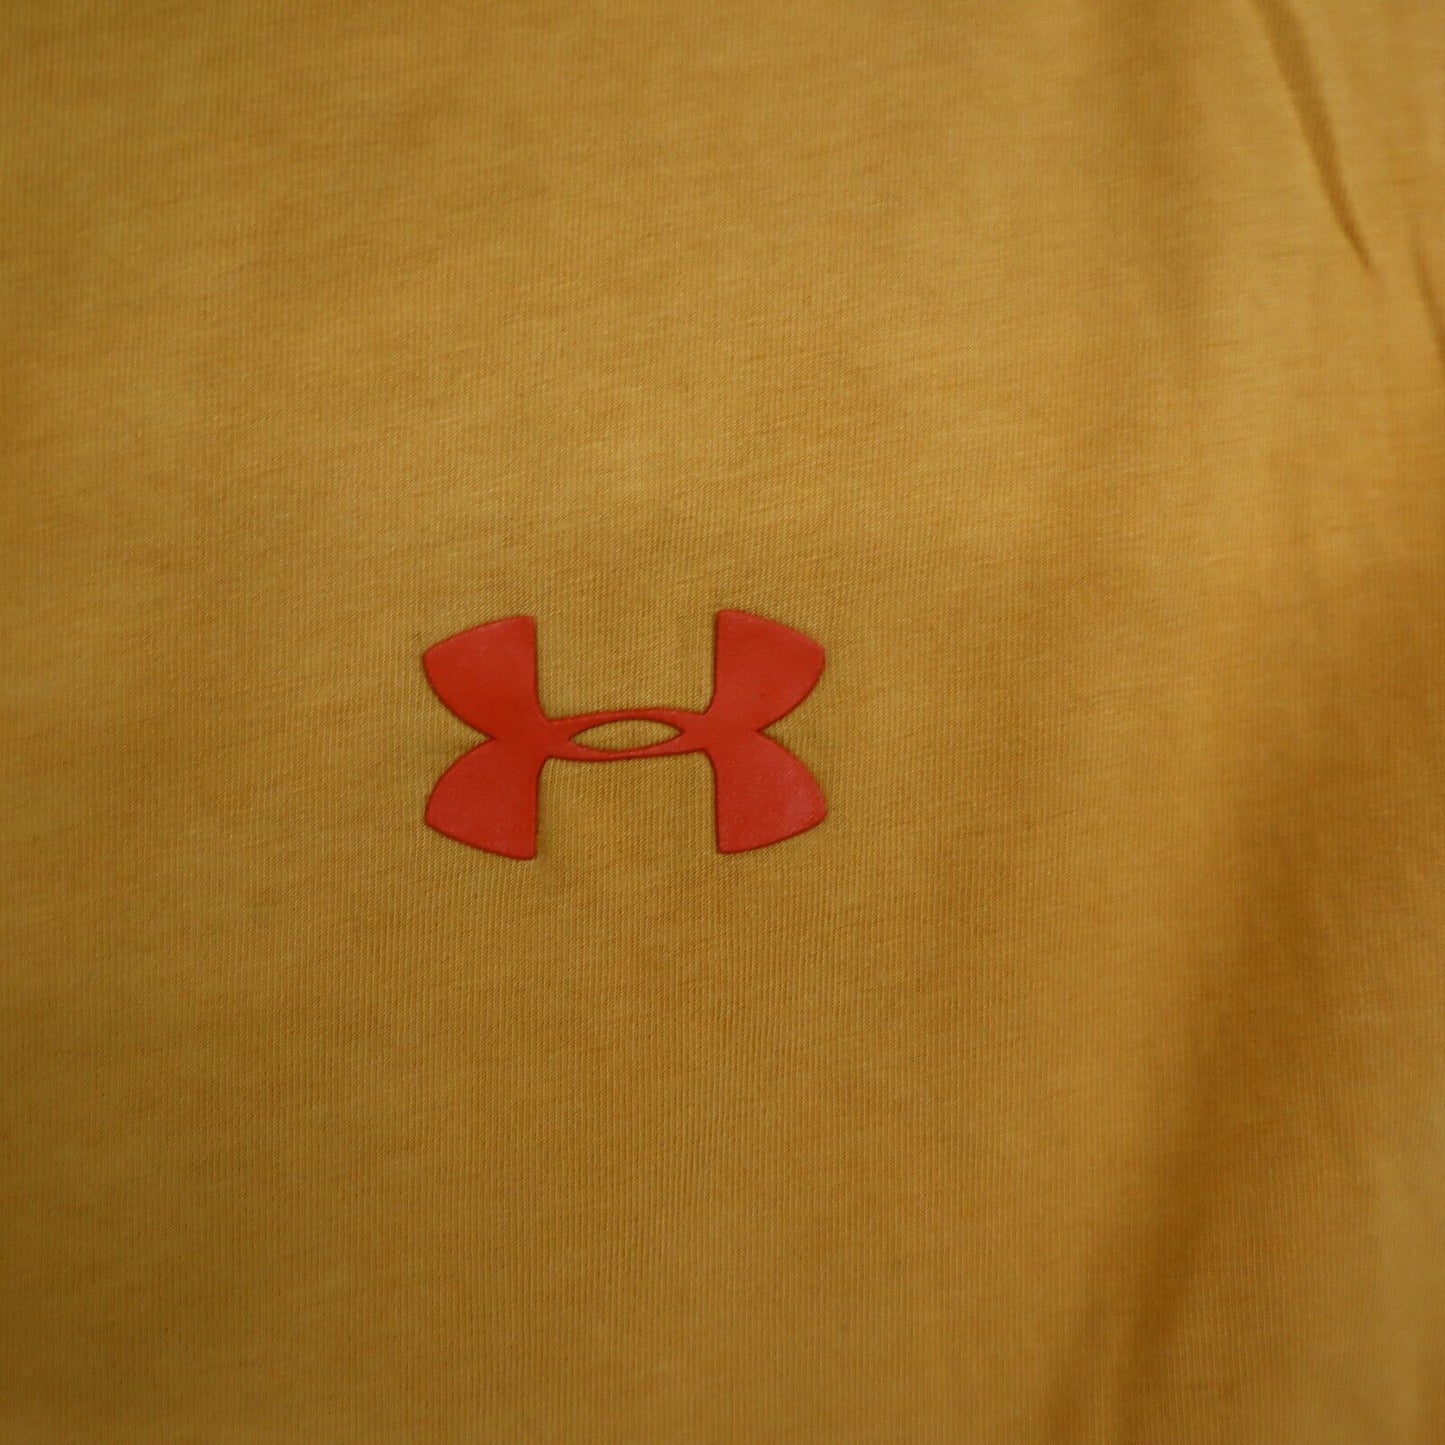 Under Armour Sports Basketball Shirt Men s Medium Brown Sleeveless Logo Shirt